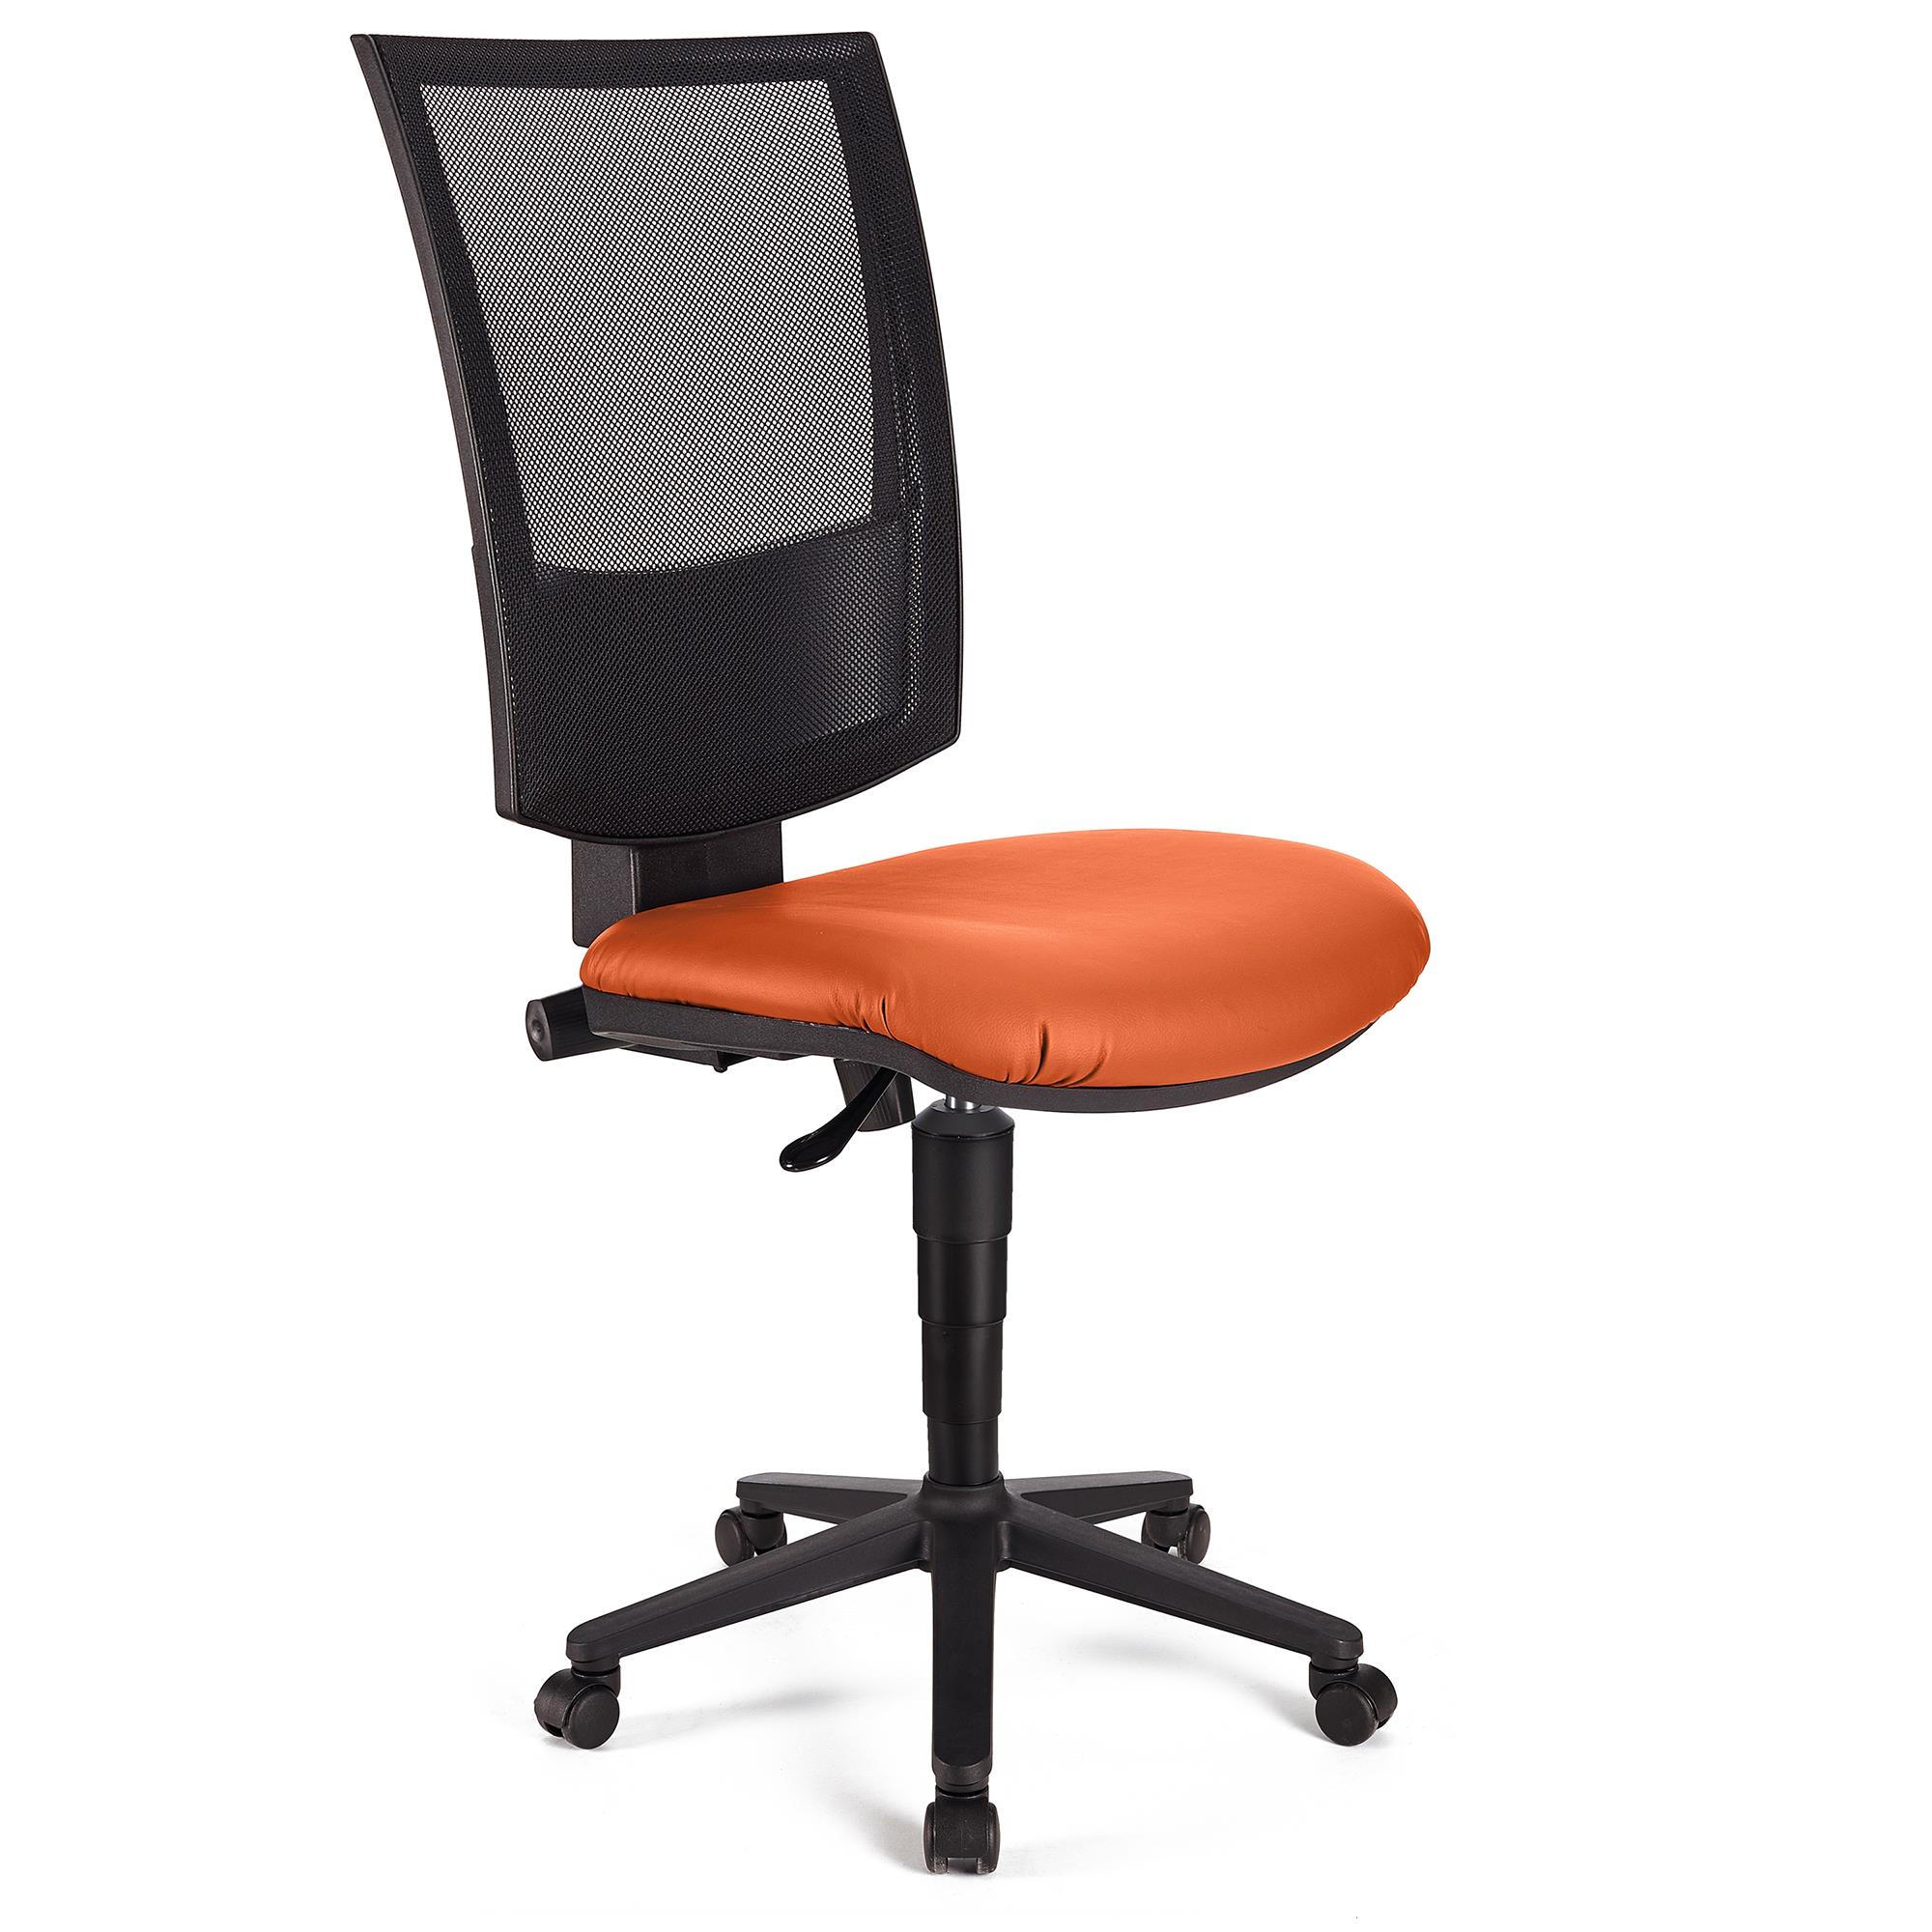 Bürostuhl PANDORA OHNE ARMLEHNEN LEDER, verstellbare Rückenlehne mit Netzbezug, dicke Polsterung, Farbe Orange